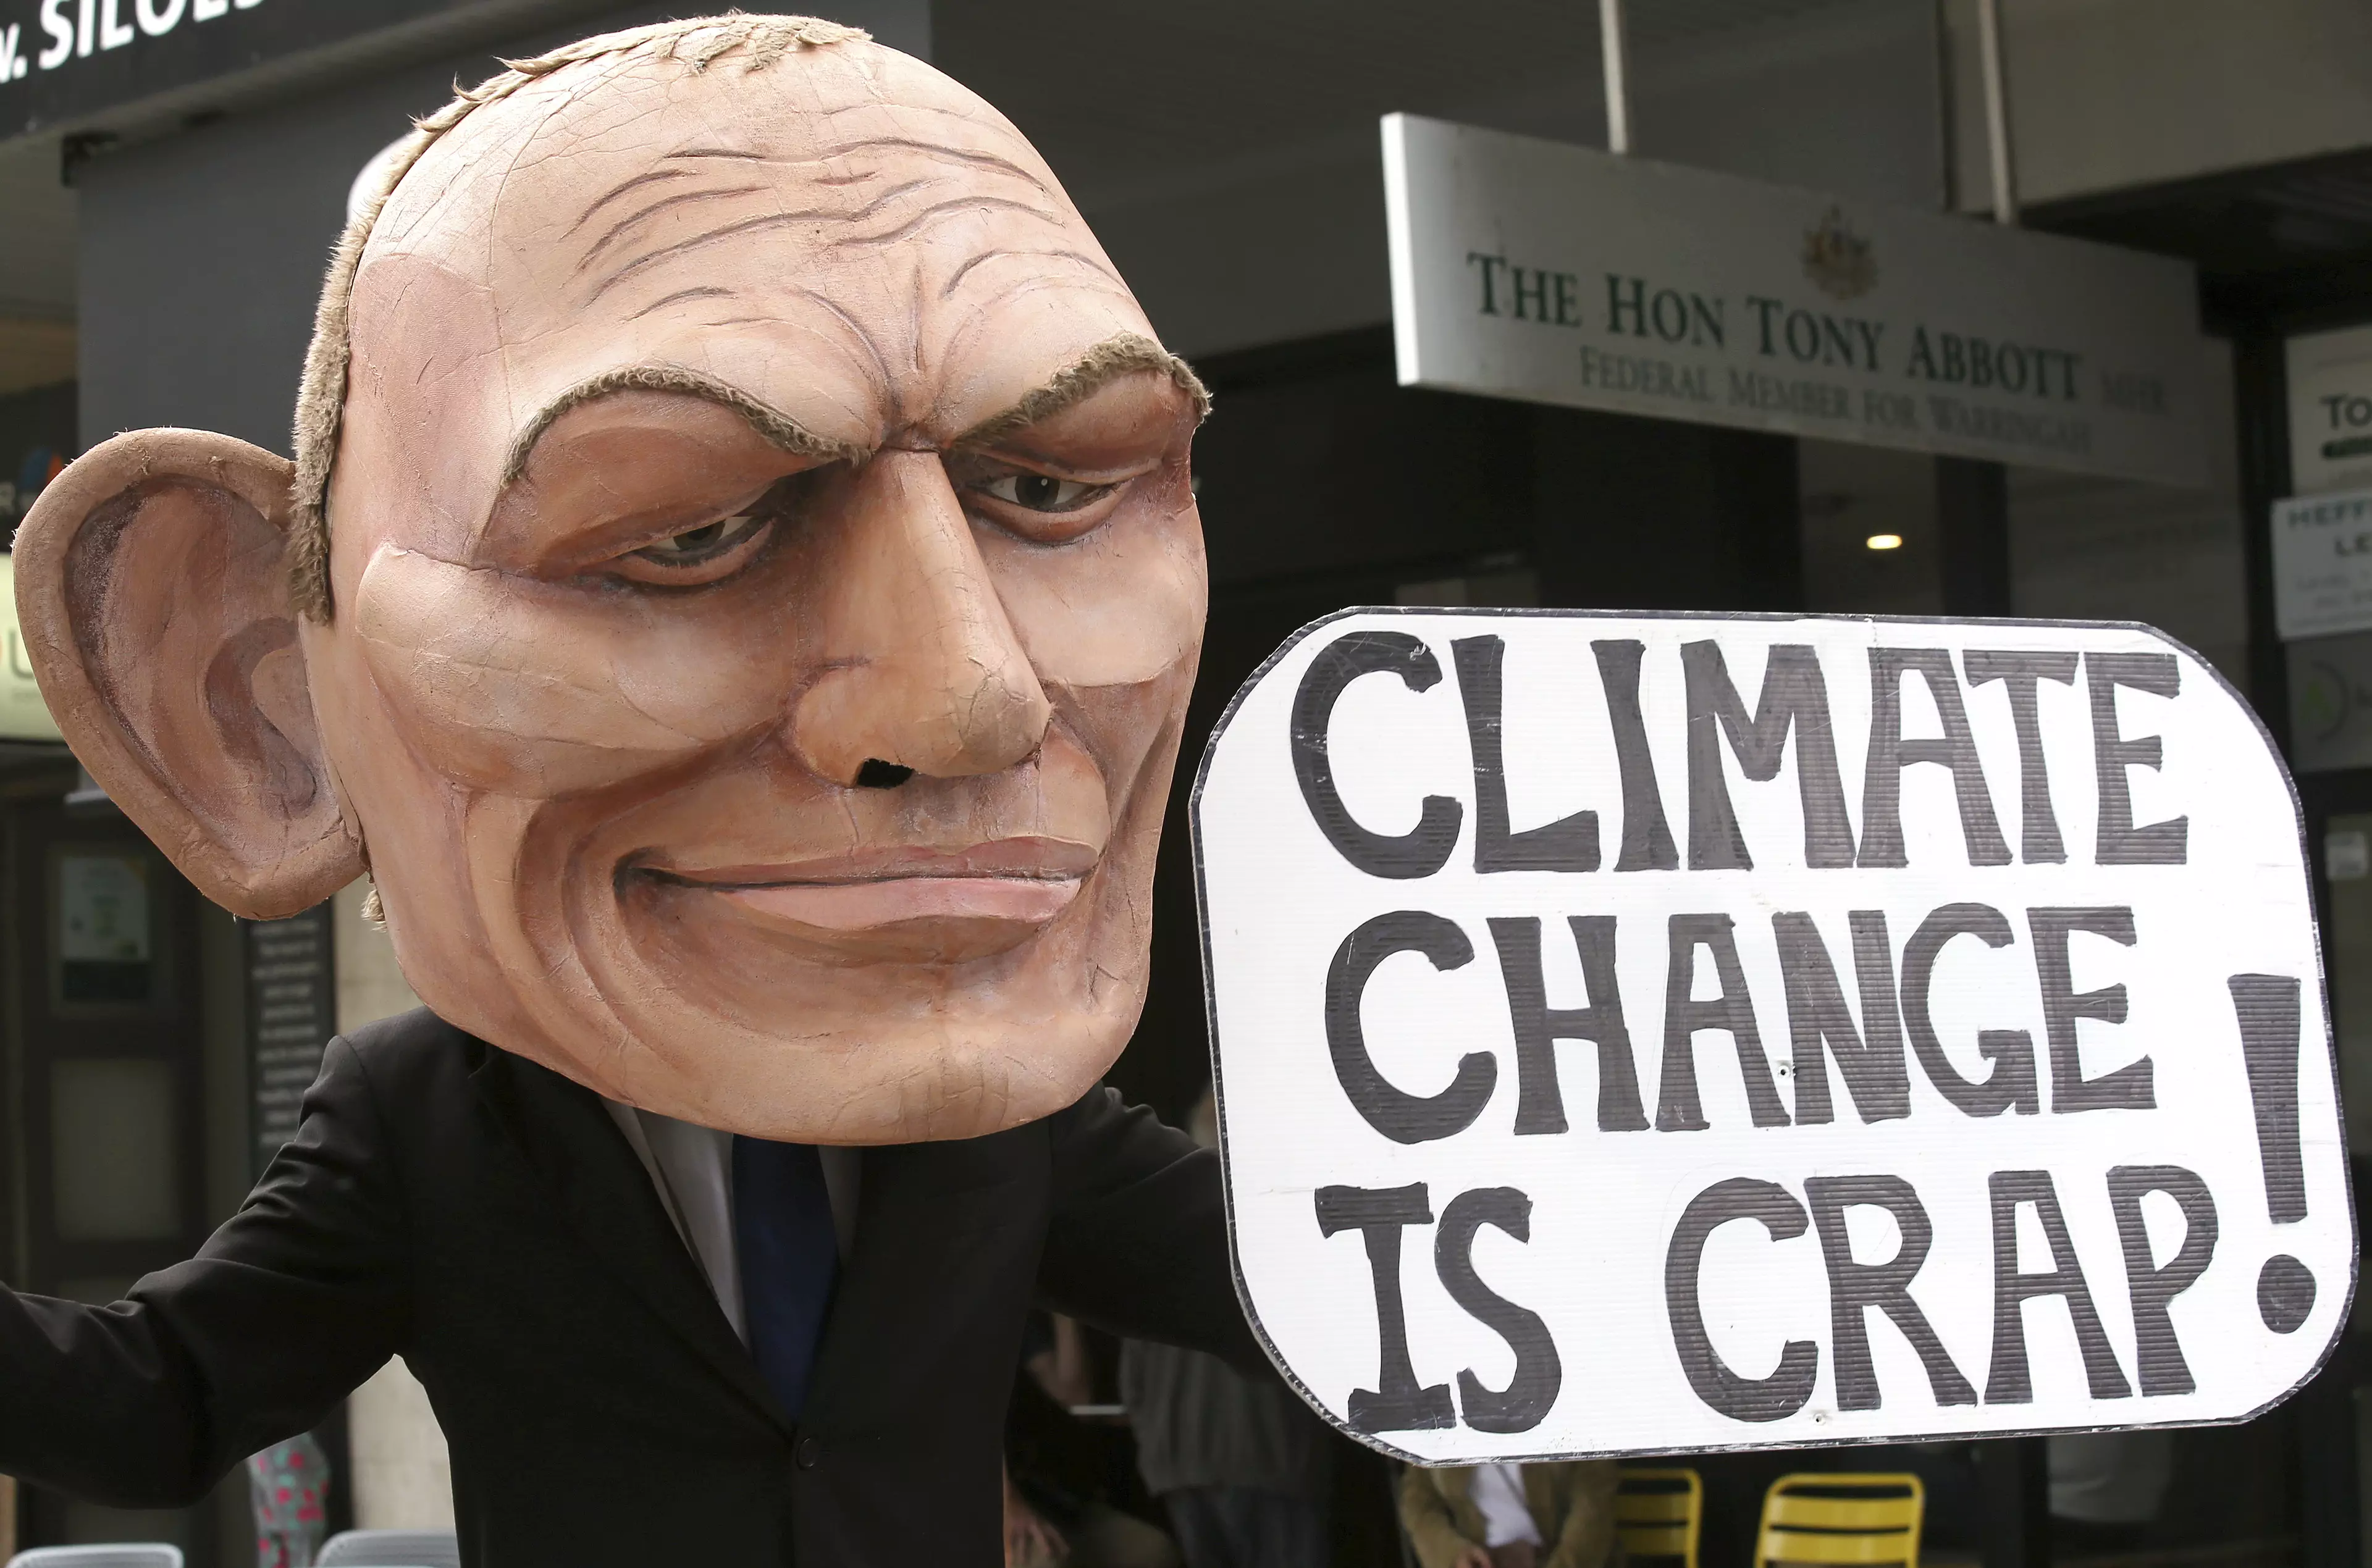 Protestor outside Mr Abbott's office.